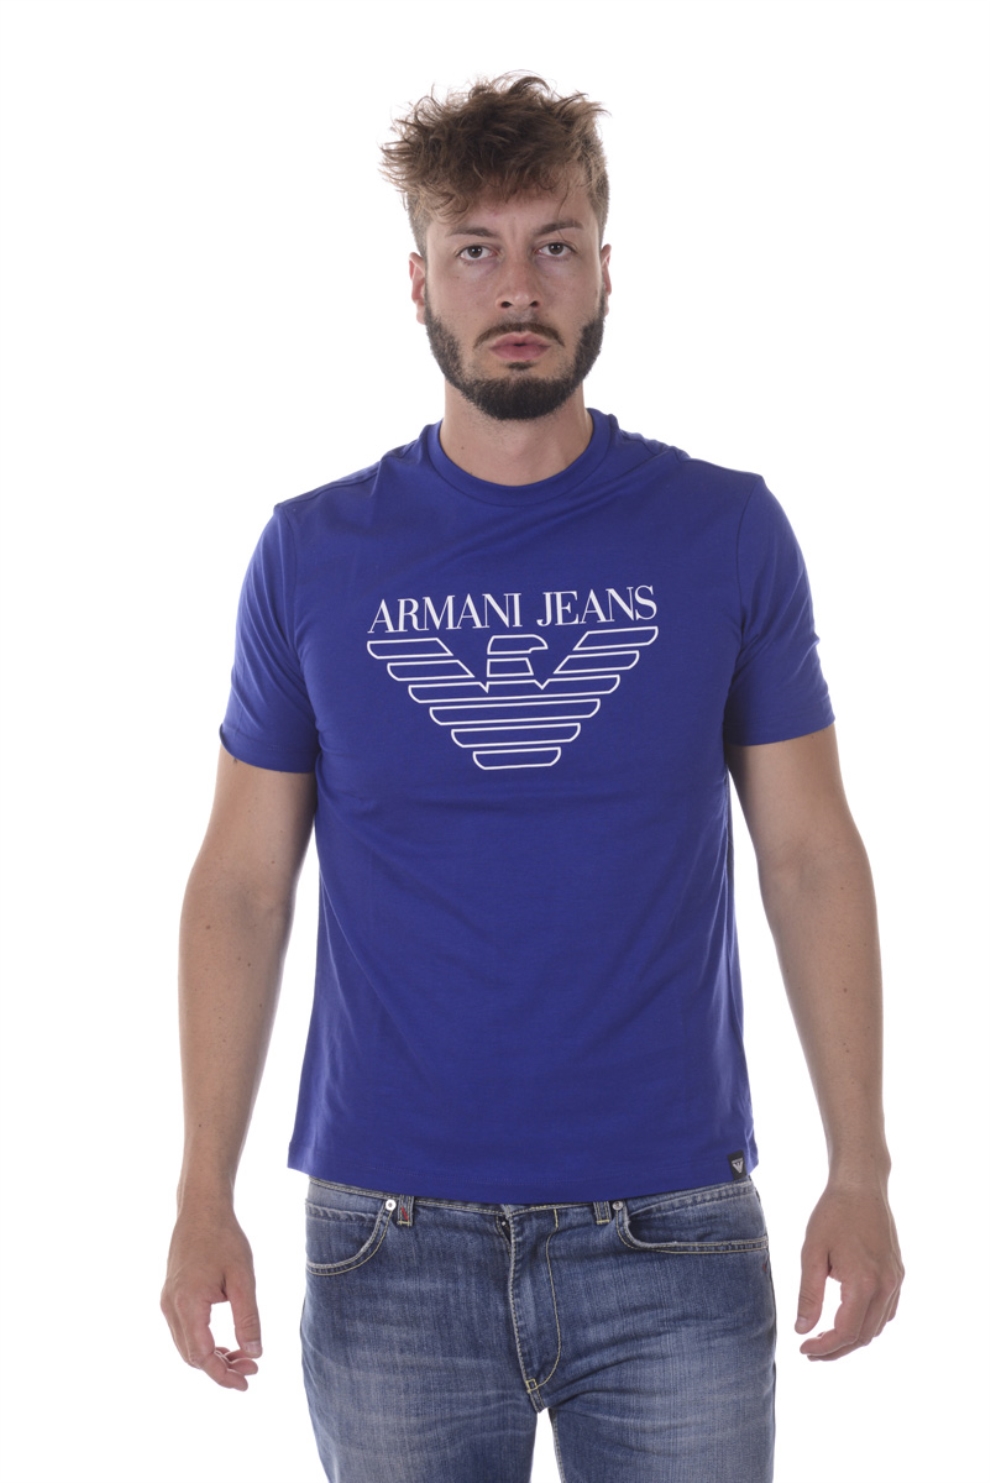 阿玛尼armaniaj短袖t恤男士青少年圆领品牌logo时尚潮流修身舒适6y6t